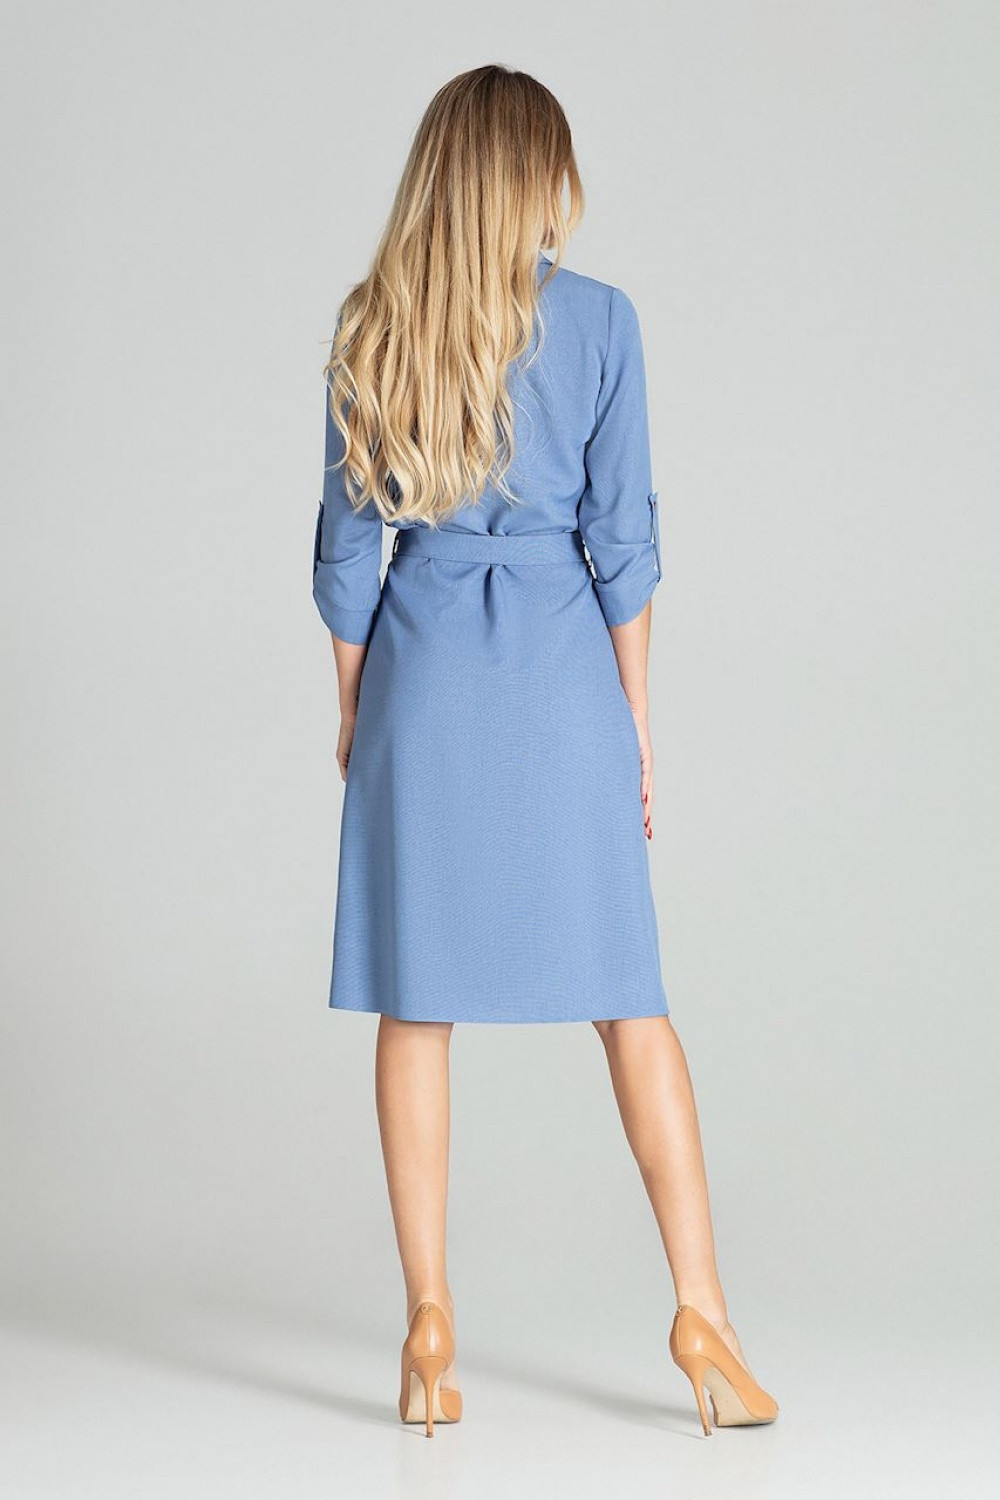 Dámské šaty model 15459561 - Figl Velikost: L-40, Barvy: jeans-modrá